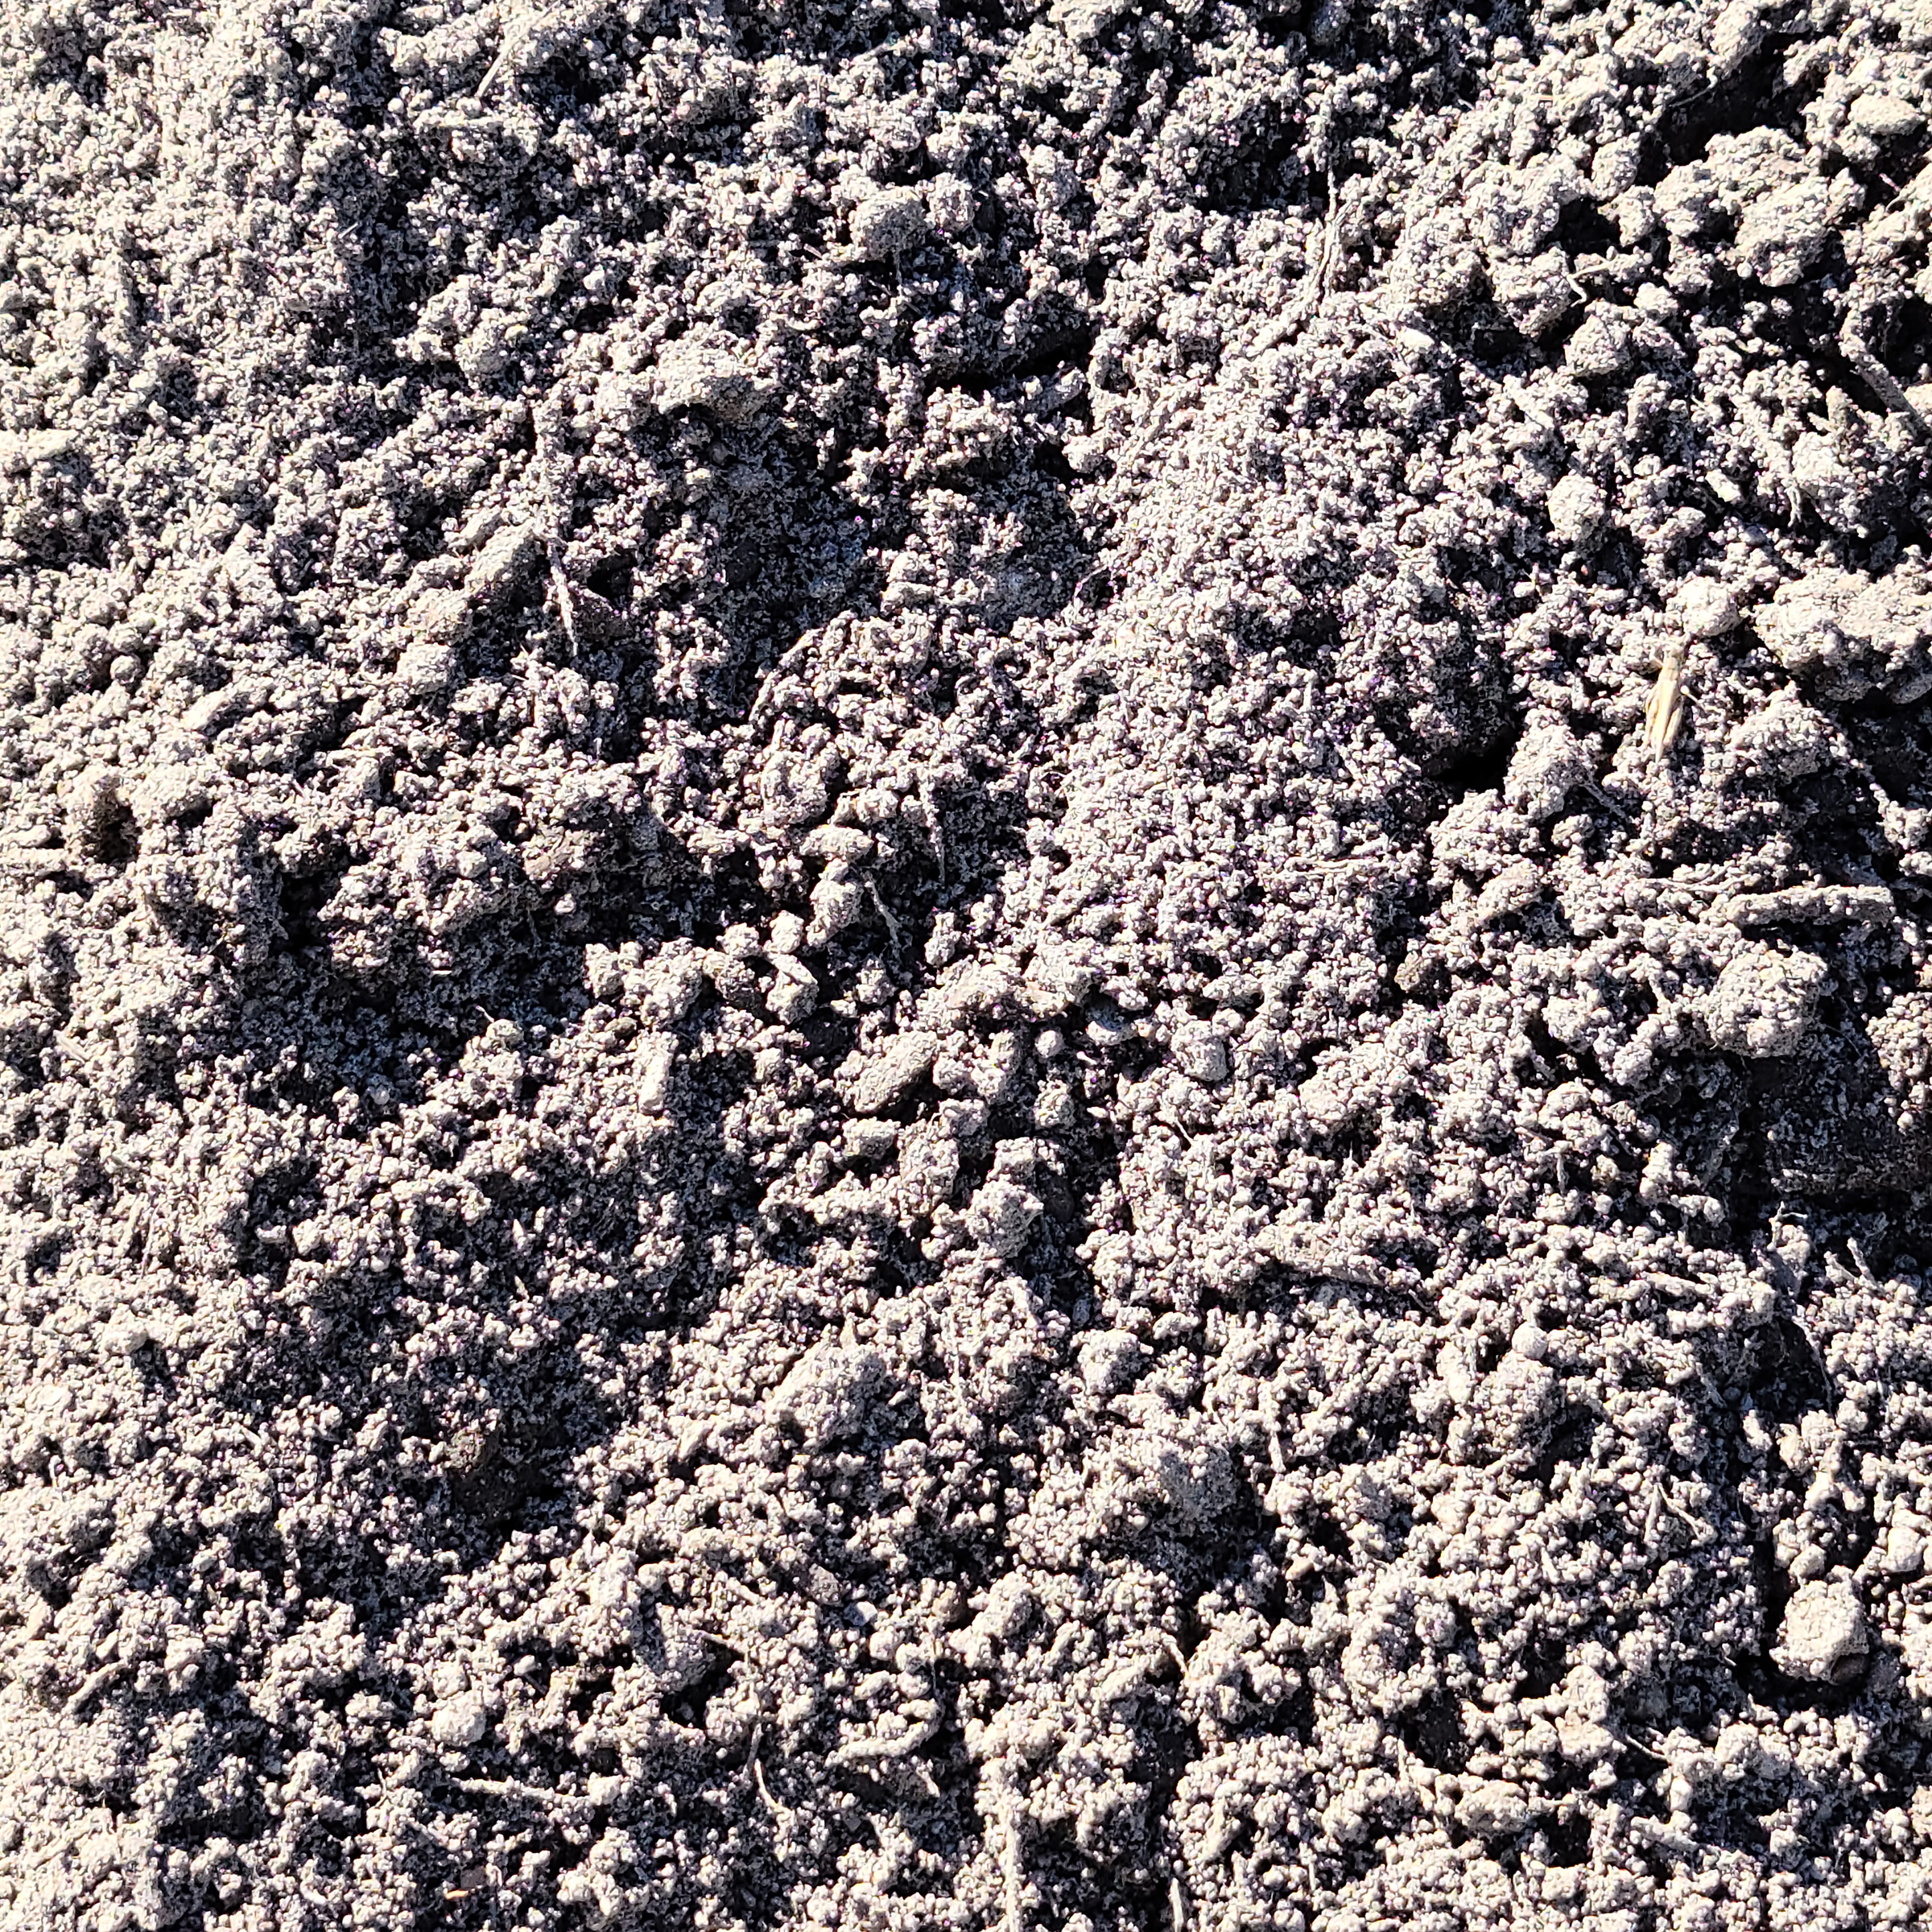 Topsoil in Delaware